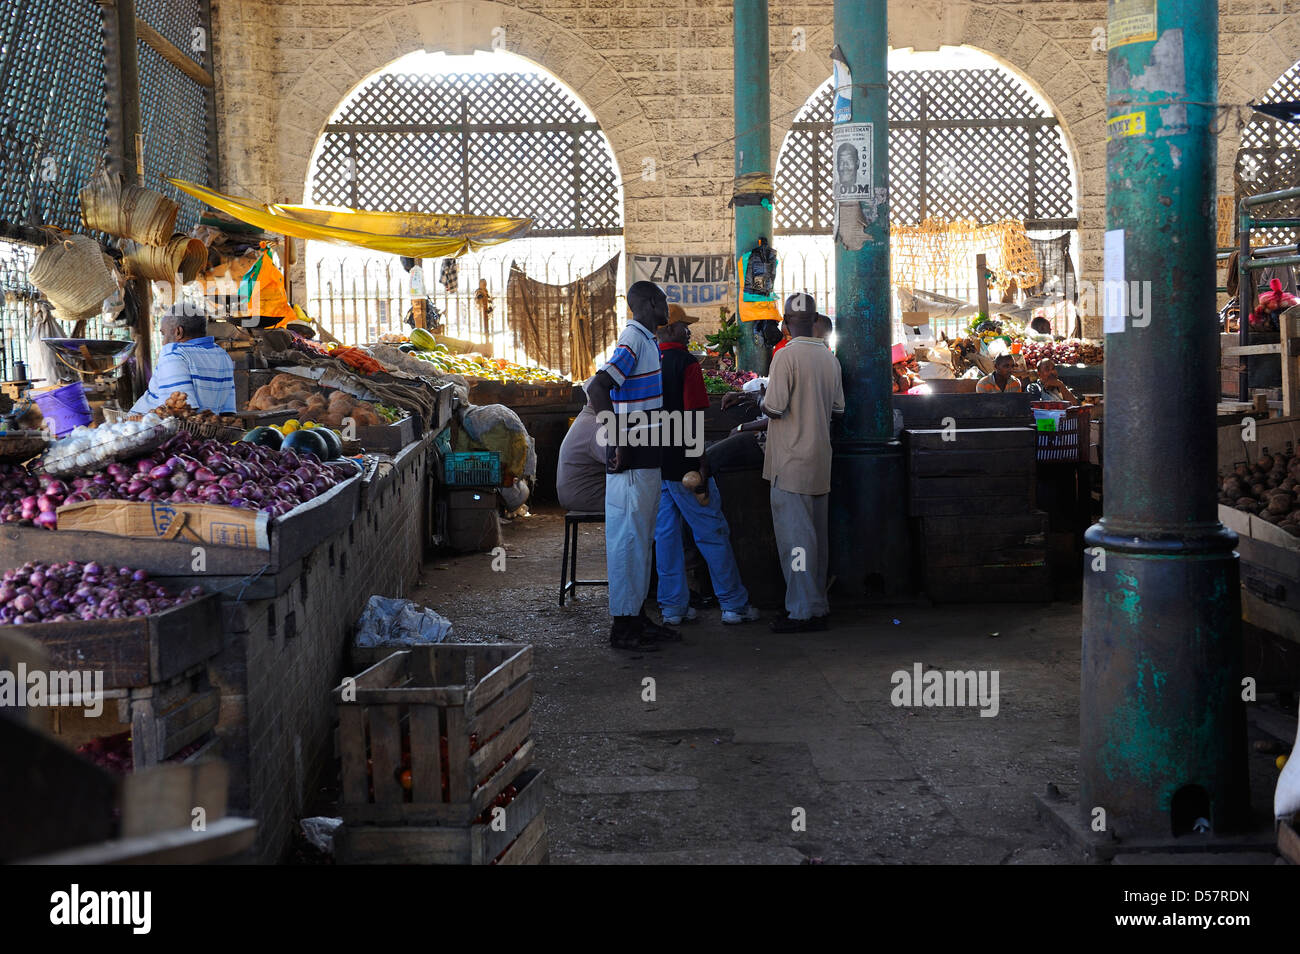 Mercato di frutta e verdura nella città vecchia di Mombasa, in Kenya, Africa orientale Foto Stock